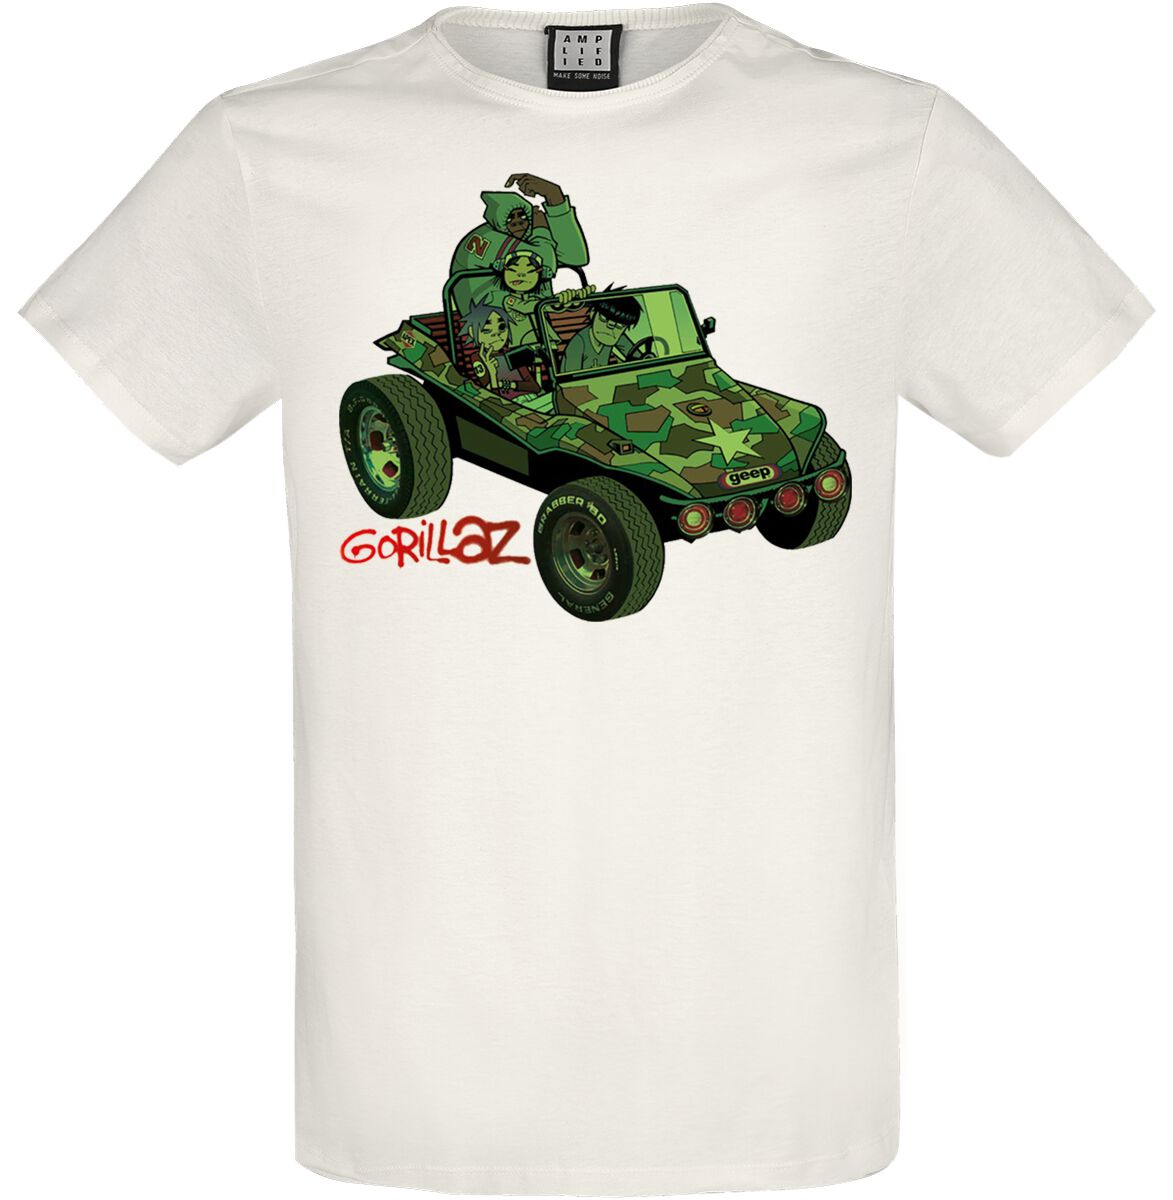 Gorillaz T-Shirt - Amplified Collection - Geep - L bis XXL - für Männer - Größe L - altweiß  - Lizenziertes Merchandise!